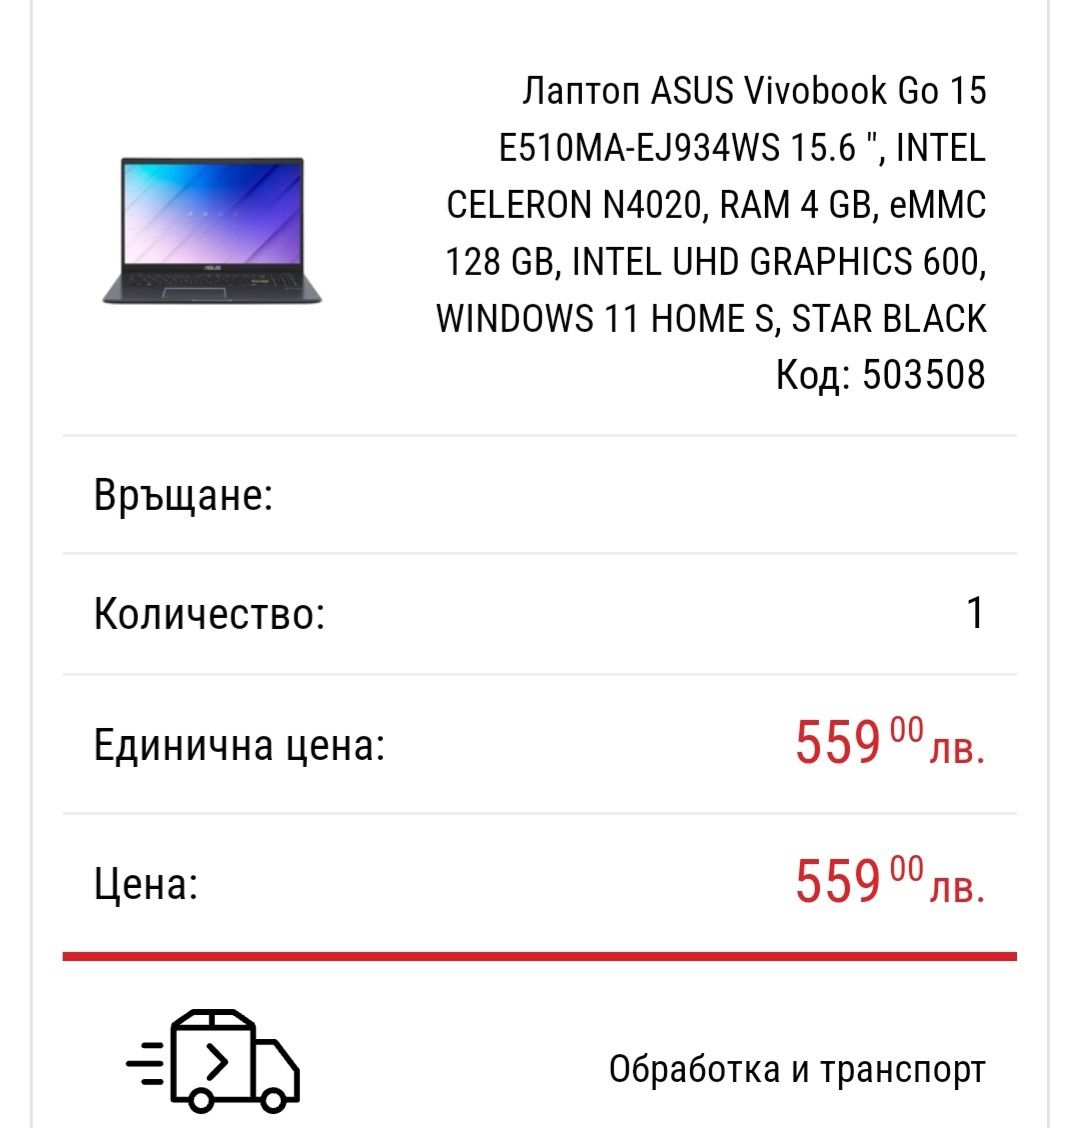 Лаптоп ASUS Vivobook Go 15, WINDOWS 11 HOME S